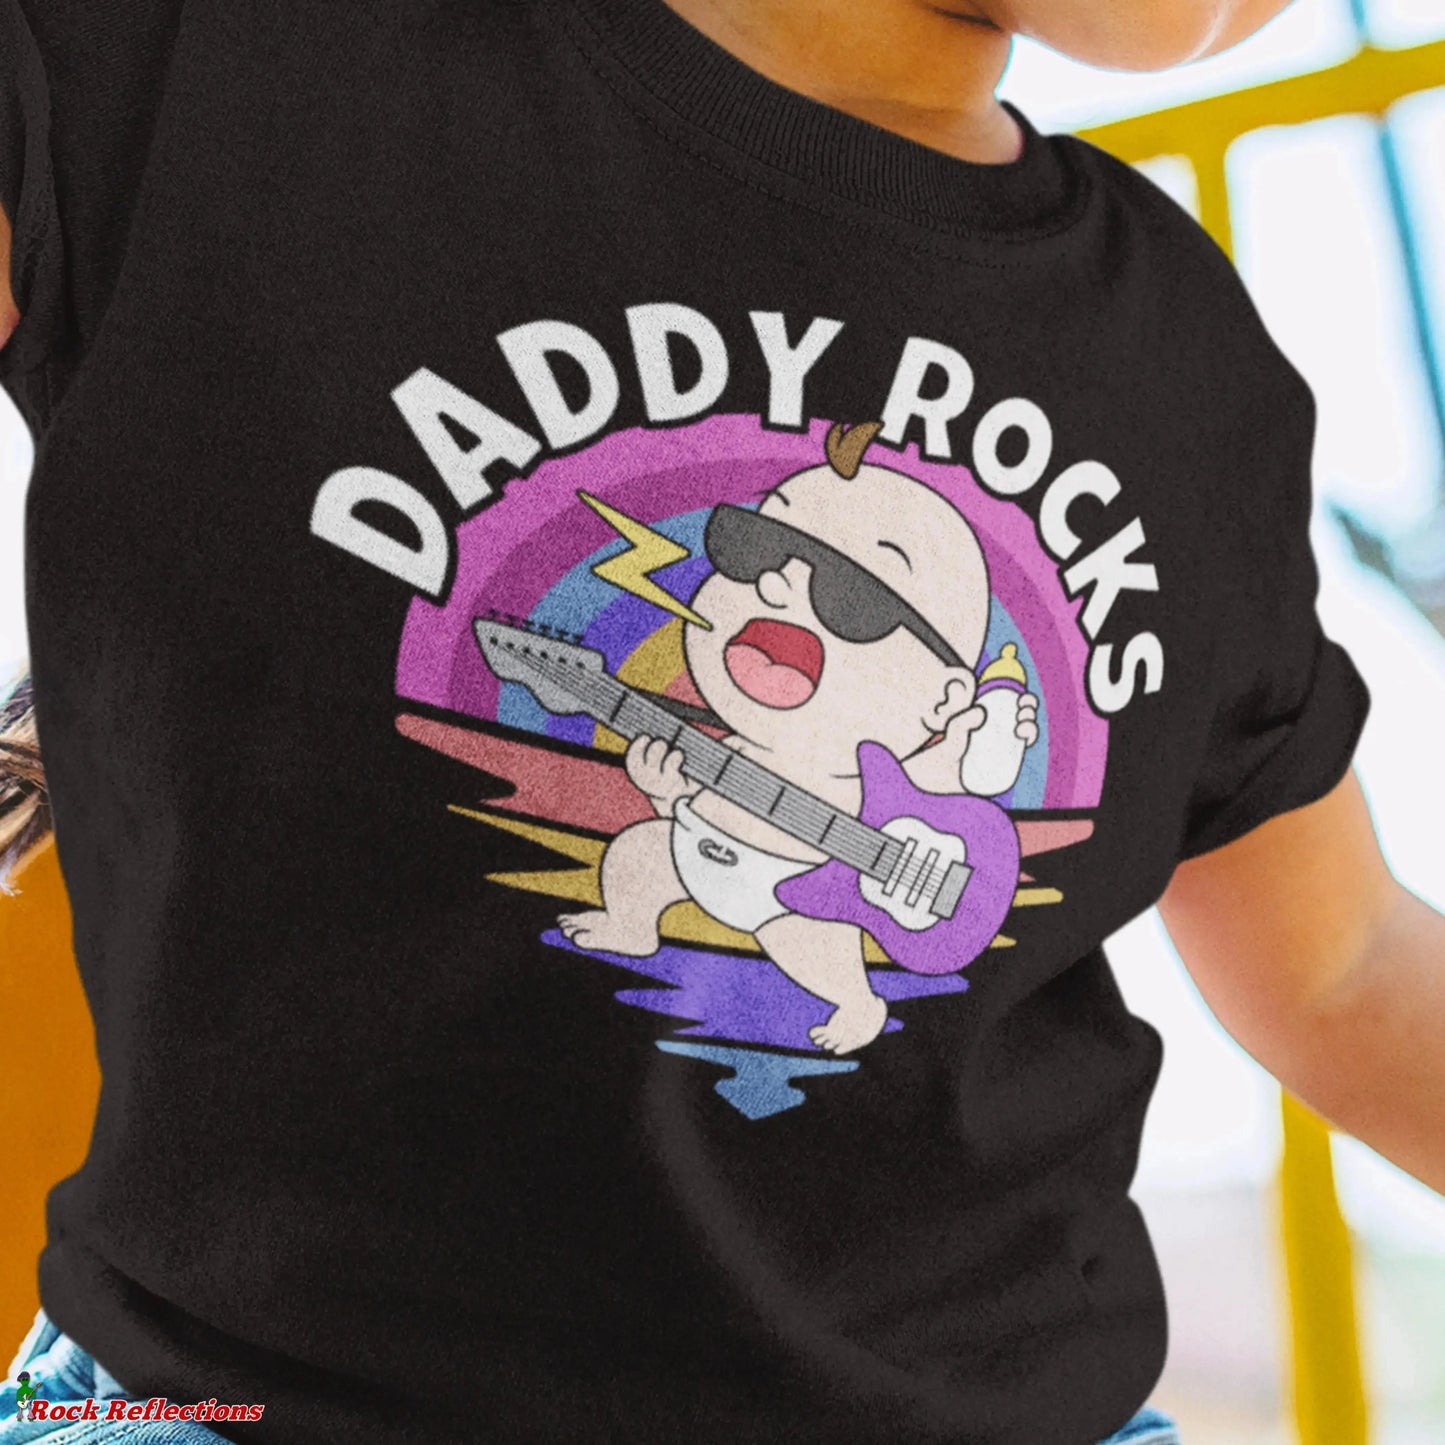 Daddy Rocks Baby SPOD